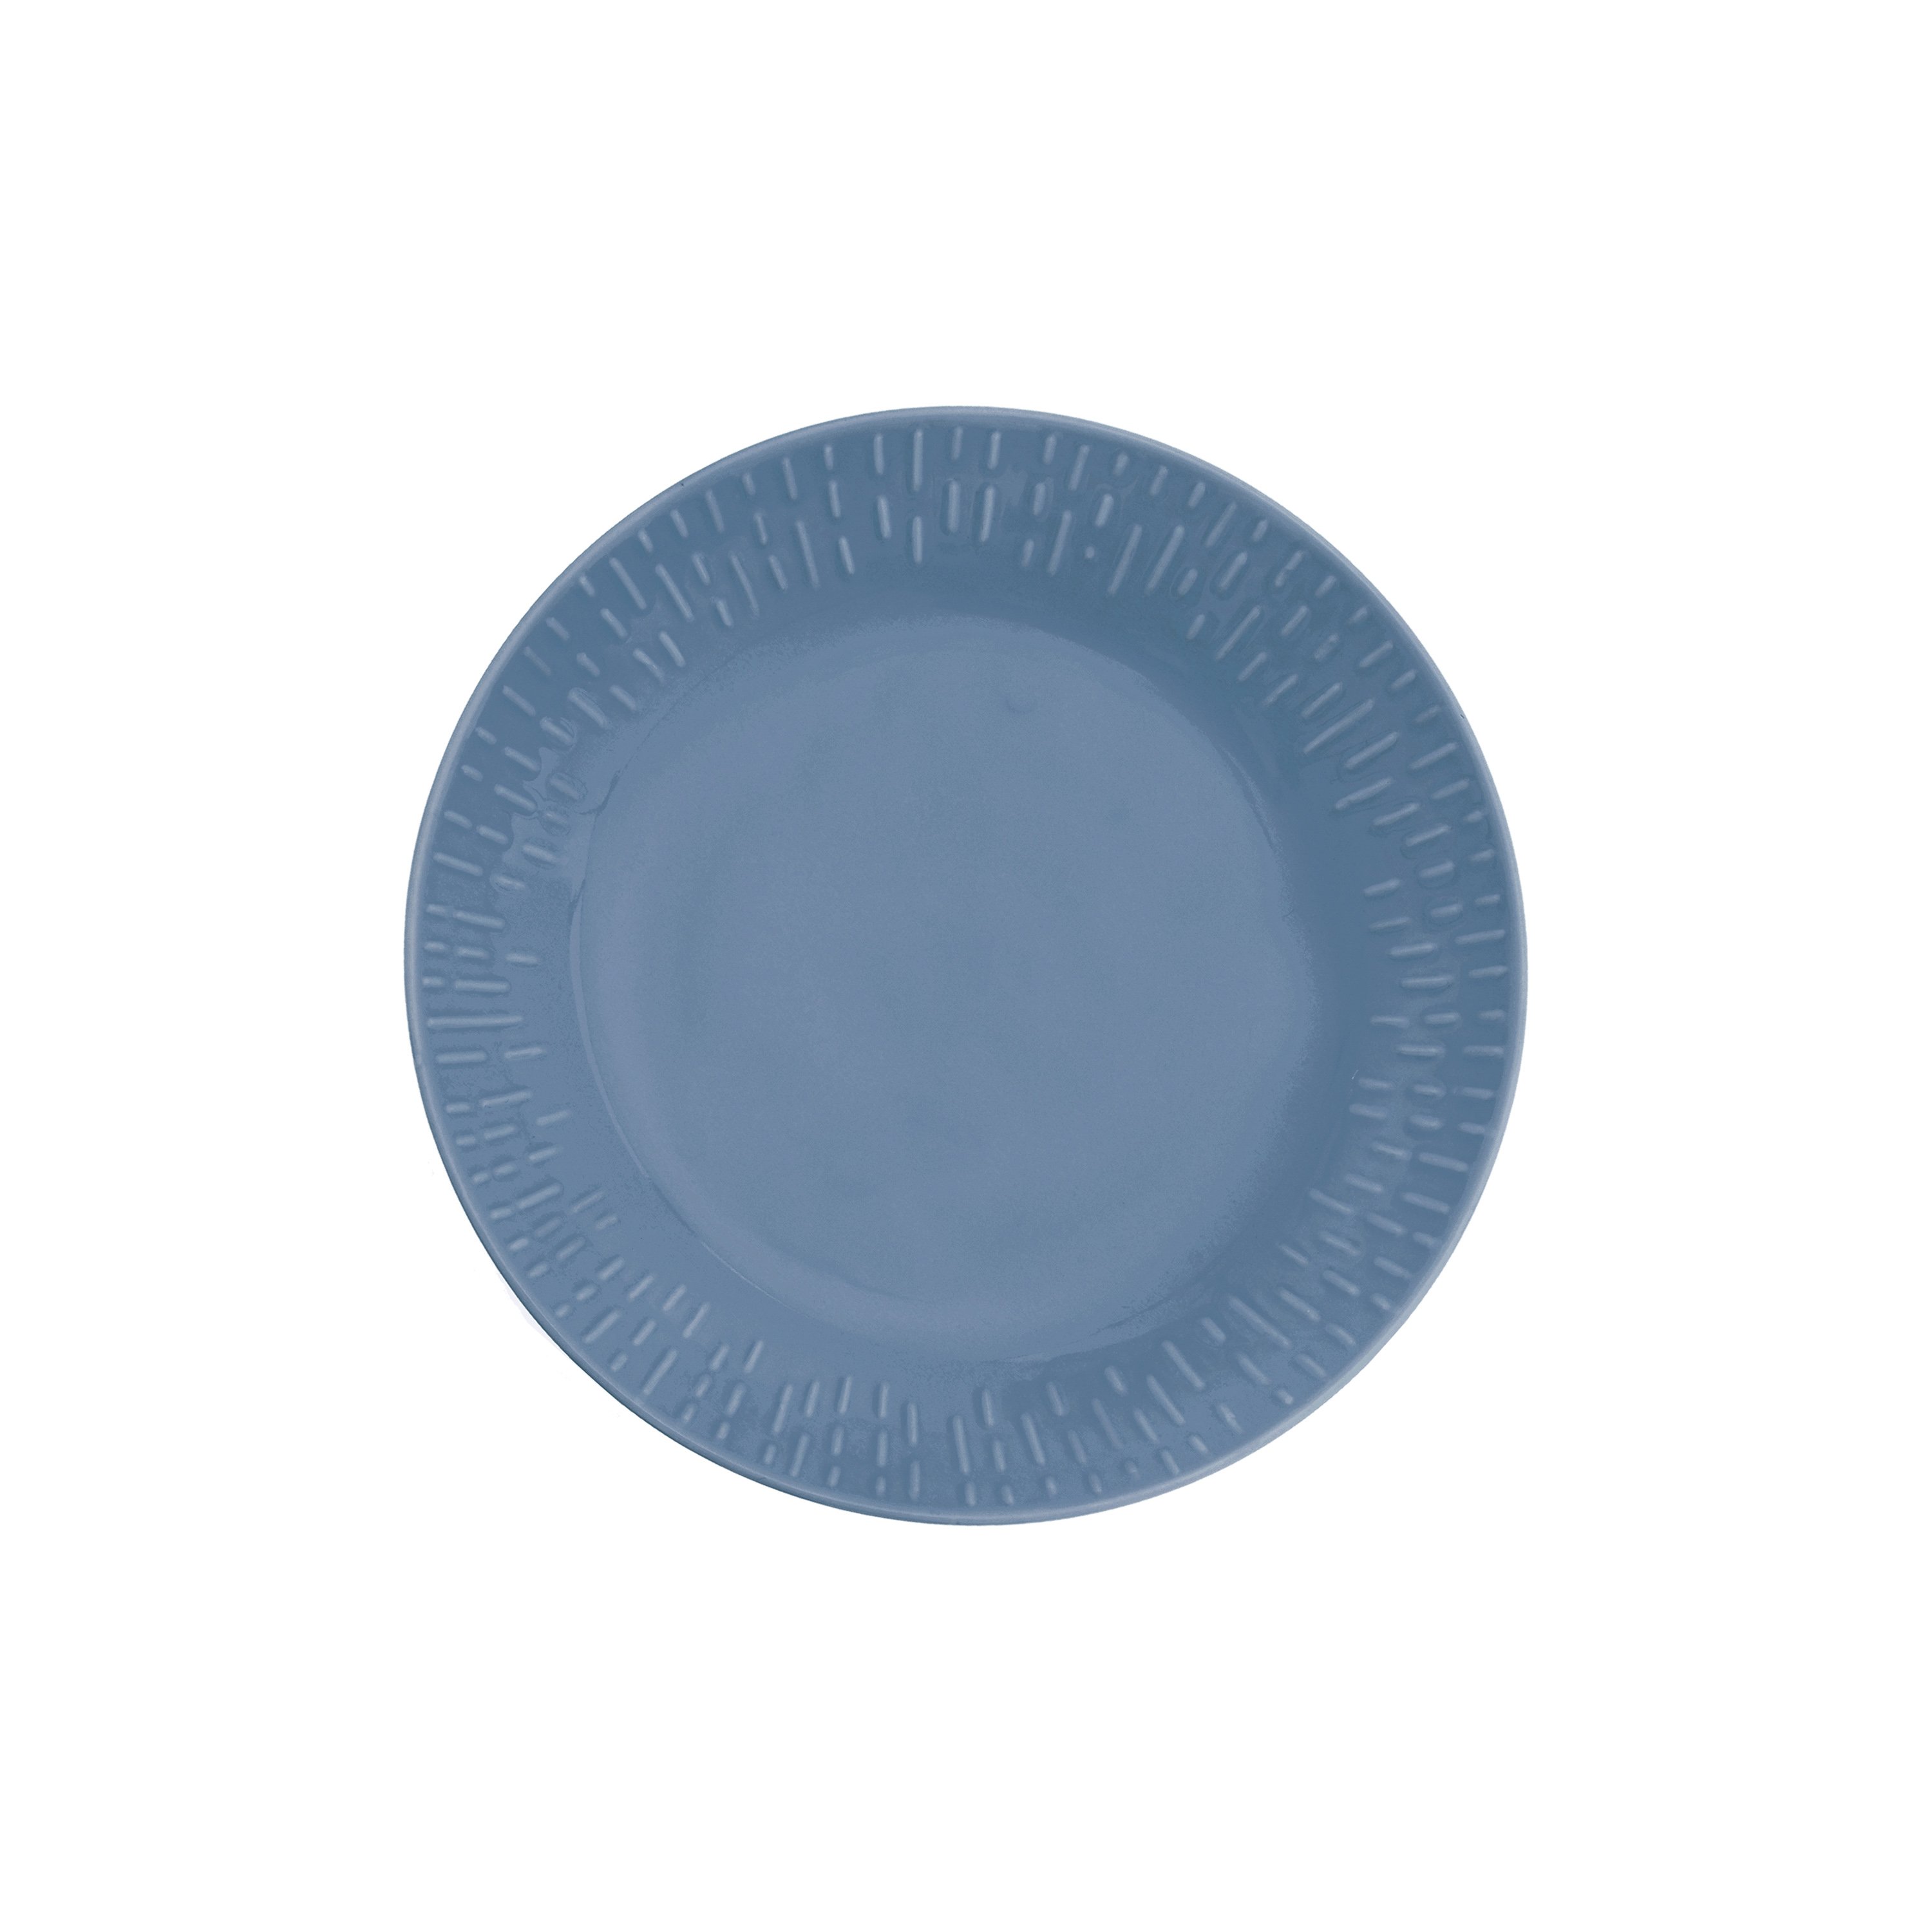 Aida - Life in Colour - Confetti - Blueberry pasta plate w/relief porcelain (13424) - Hjemme og kjøkken